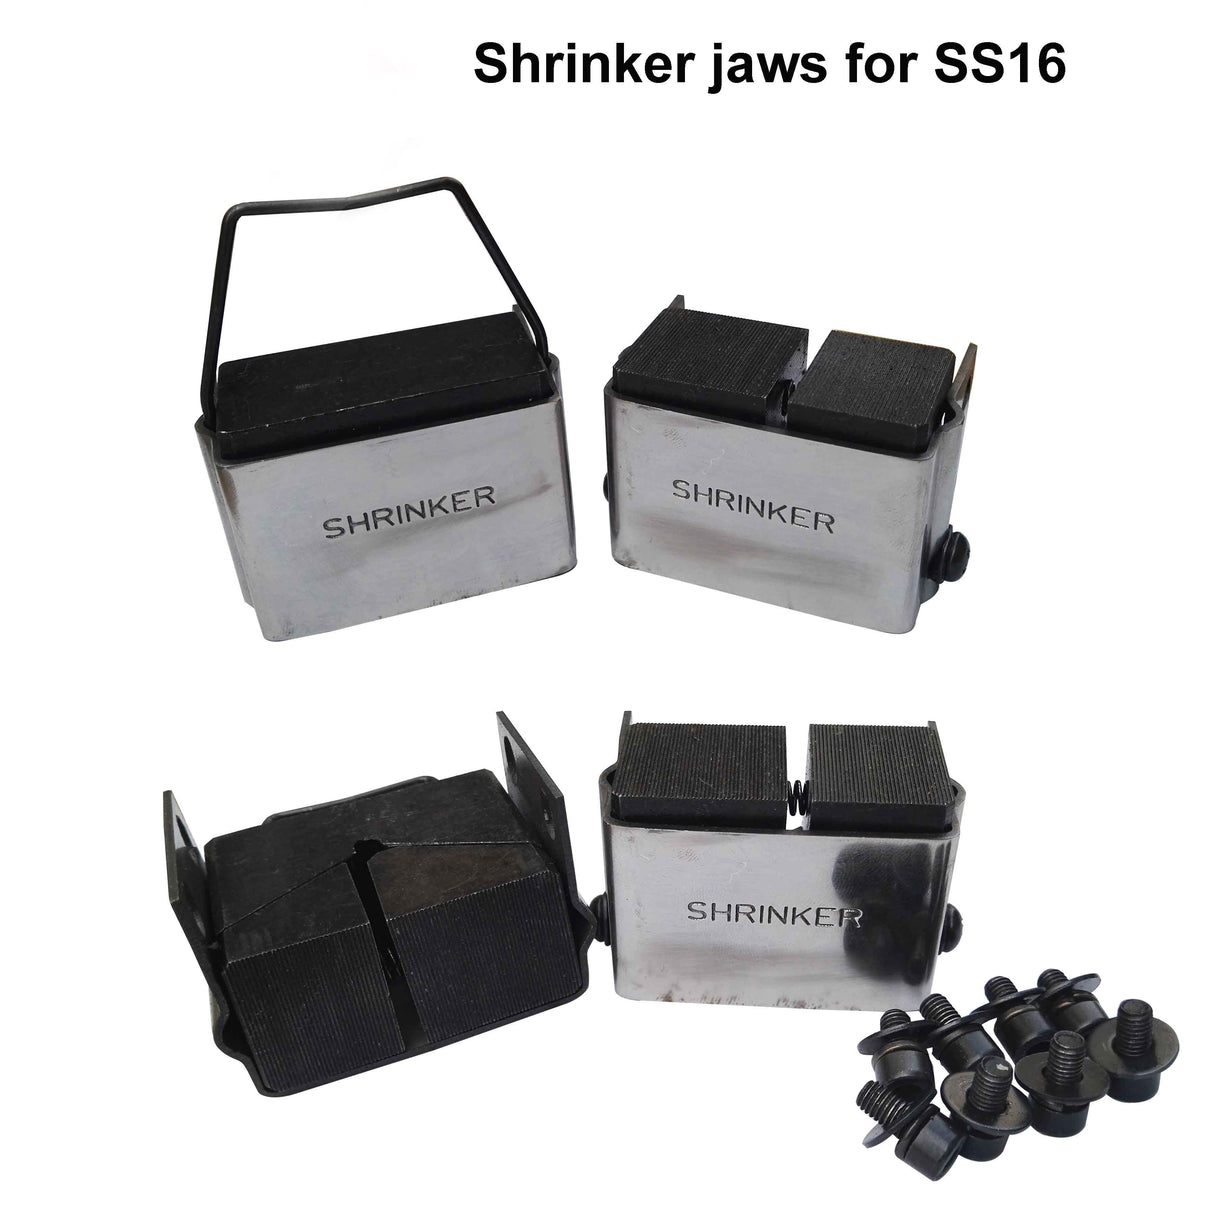 Shrinker jaws for SS-16